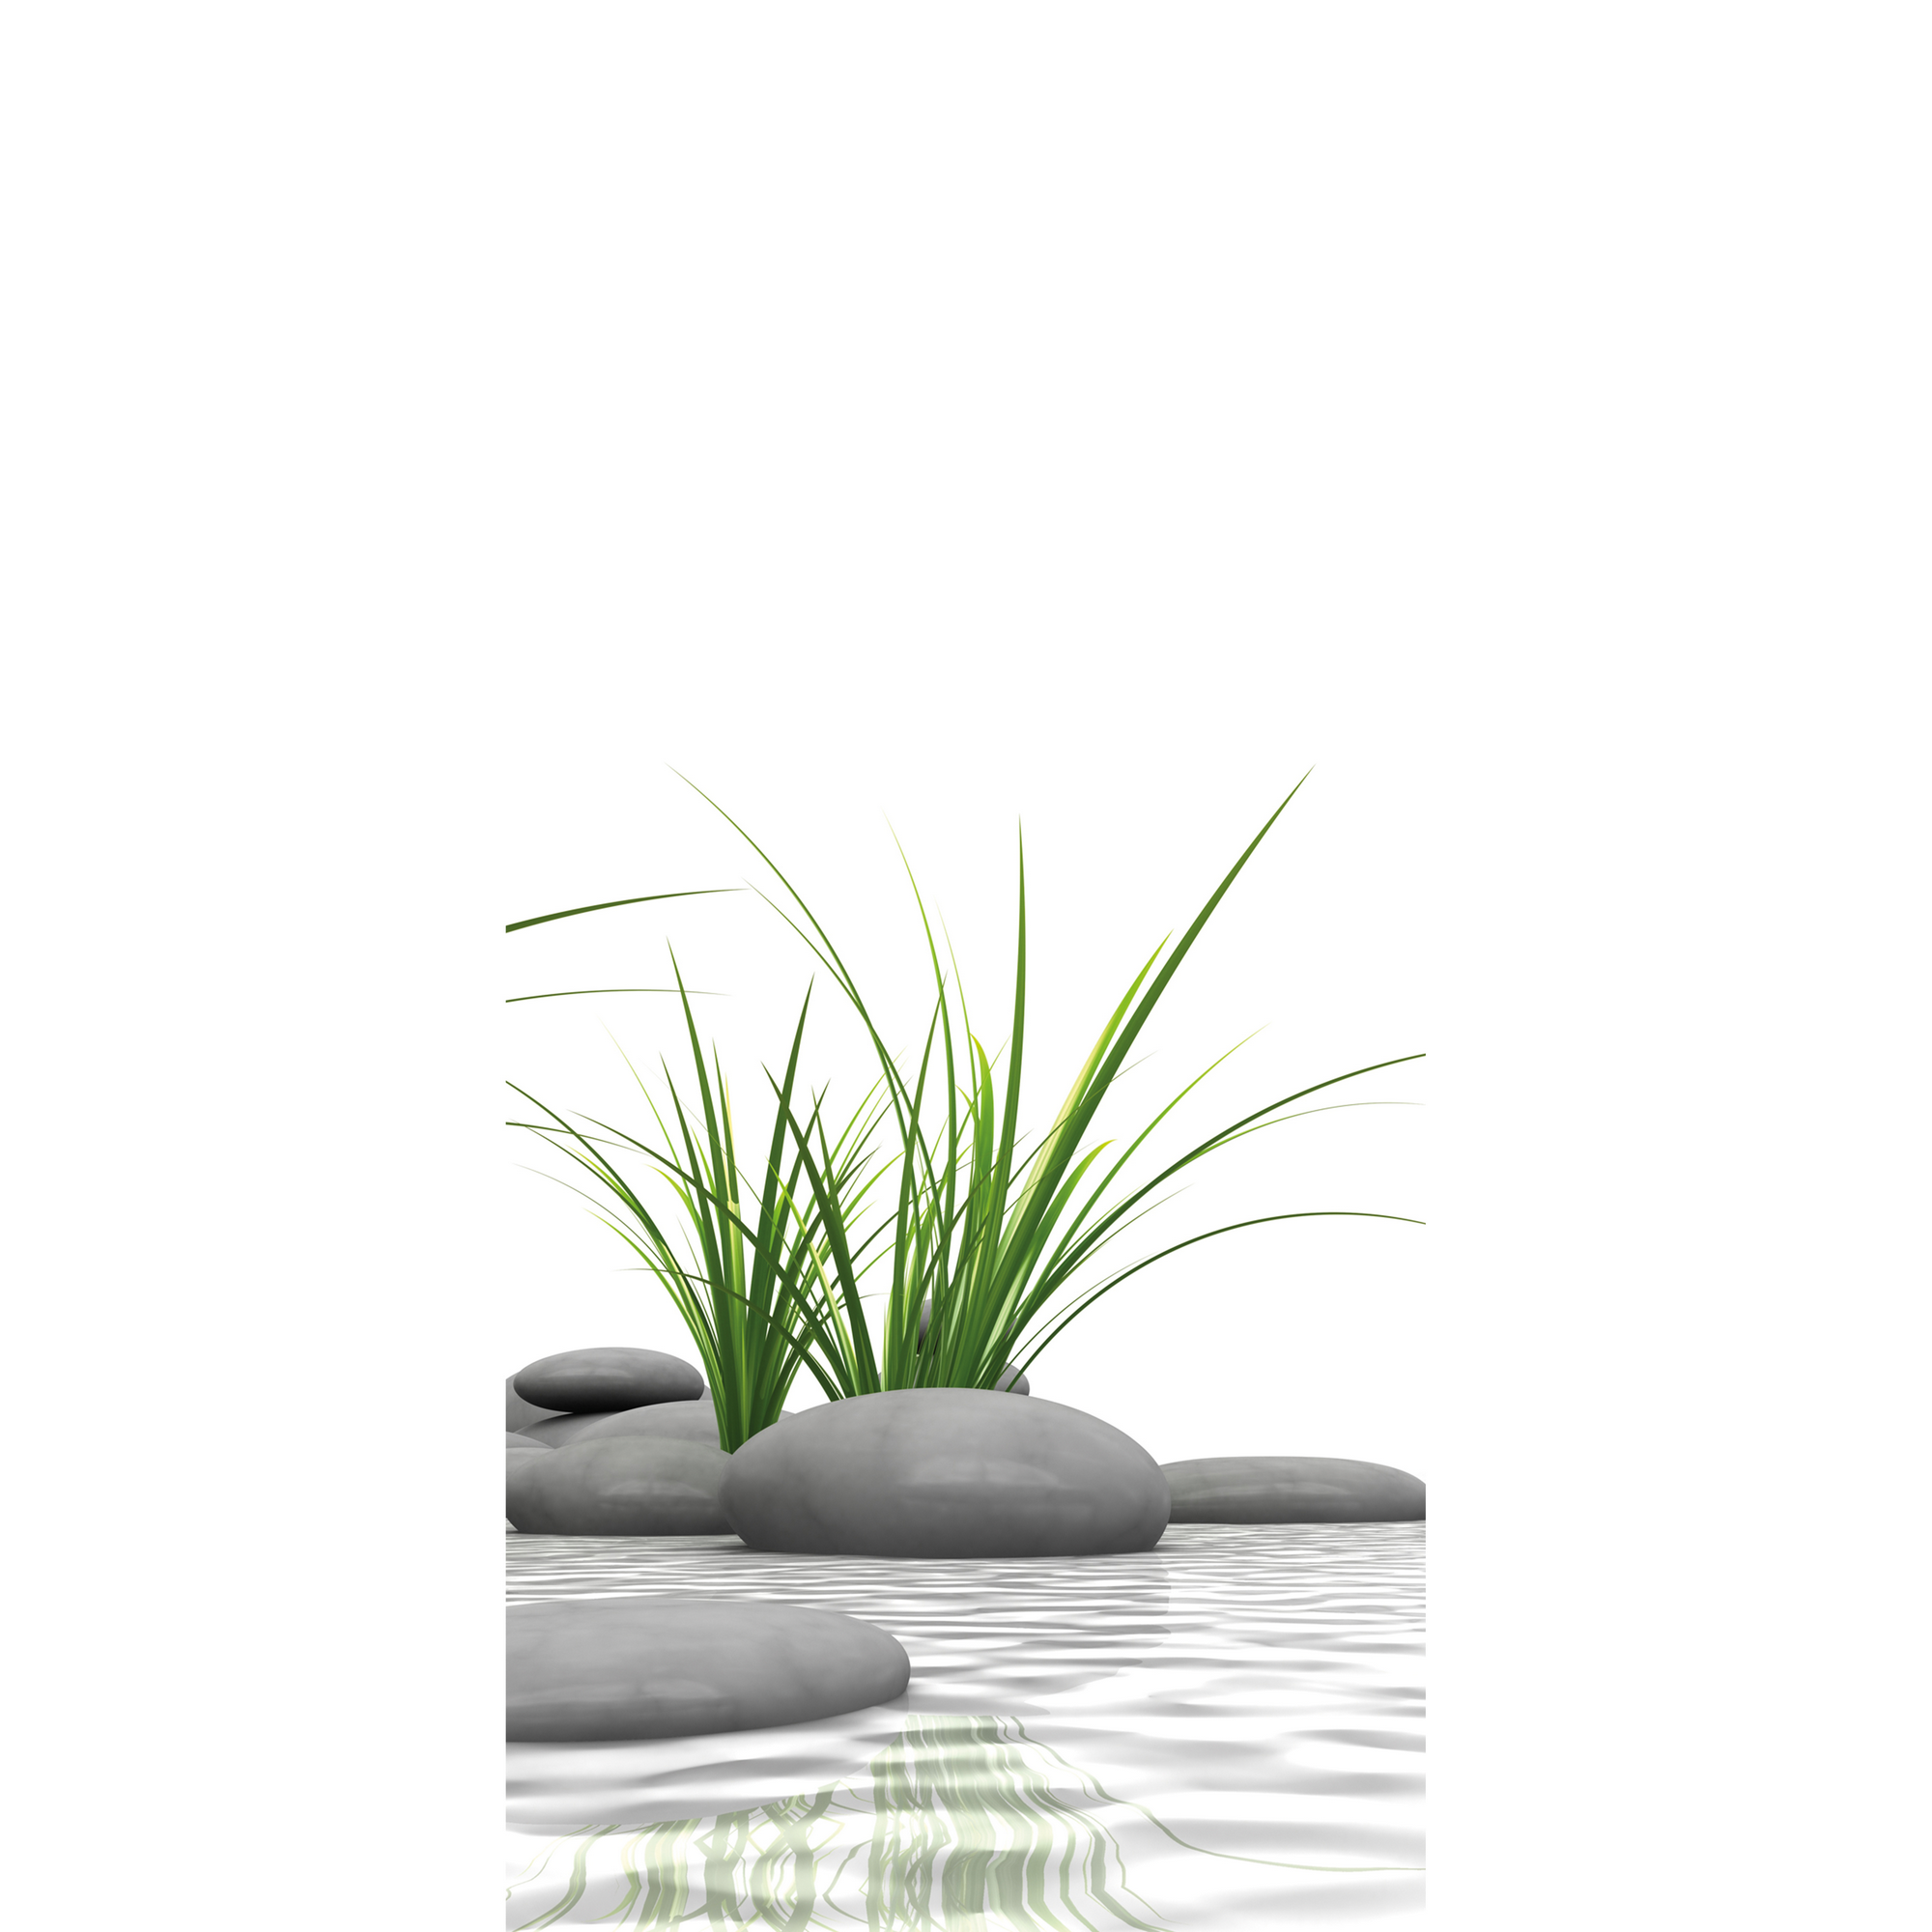 Duschrückwand 'DecoDesign' Motiv Zen-Steine & Gras, 90 x 210 cm + product picture